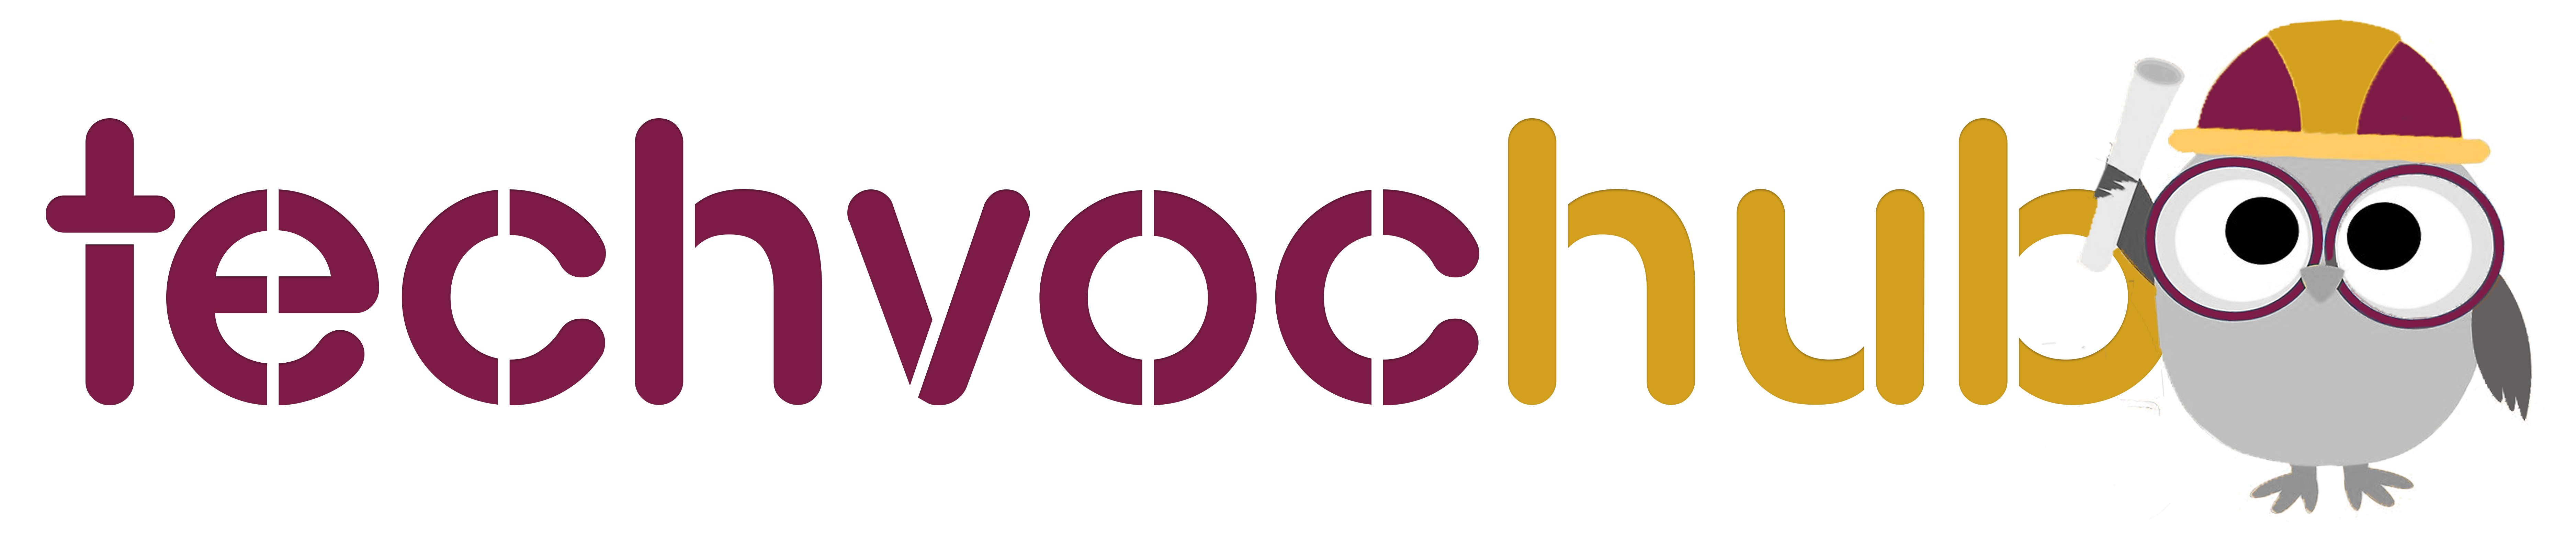 techvochub logo new